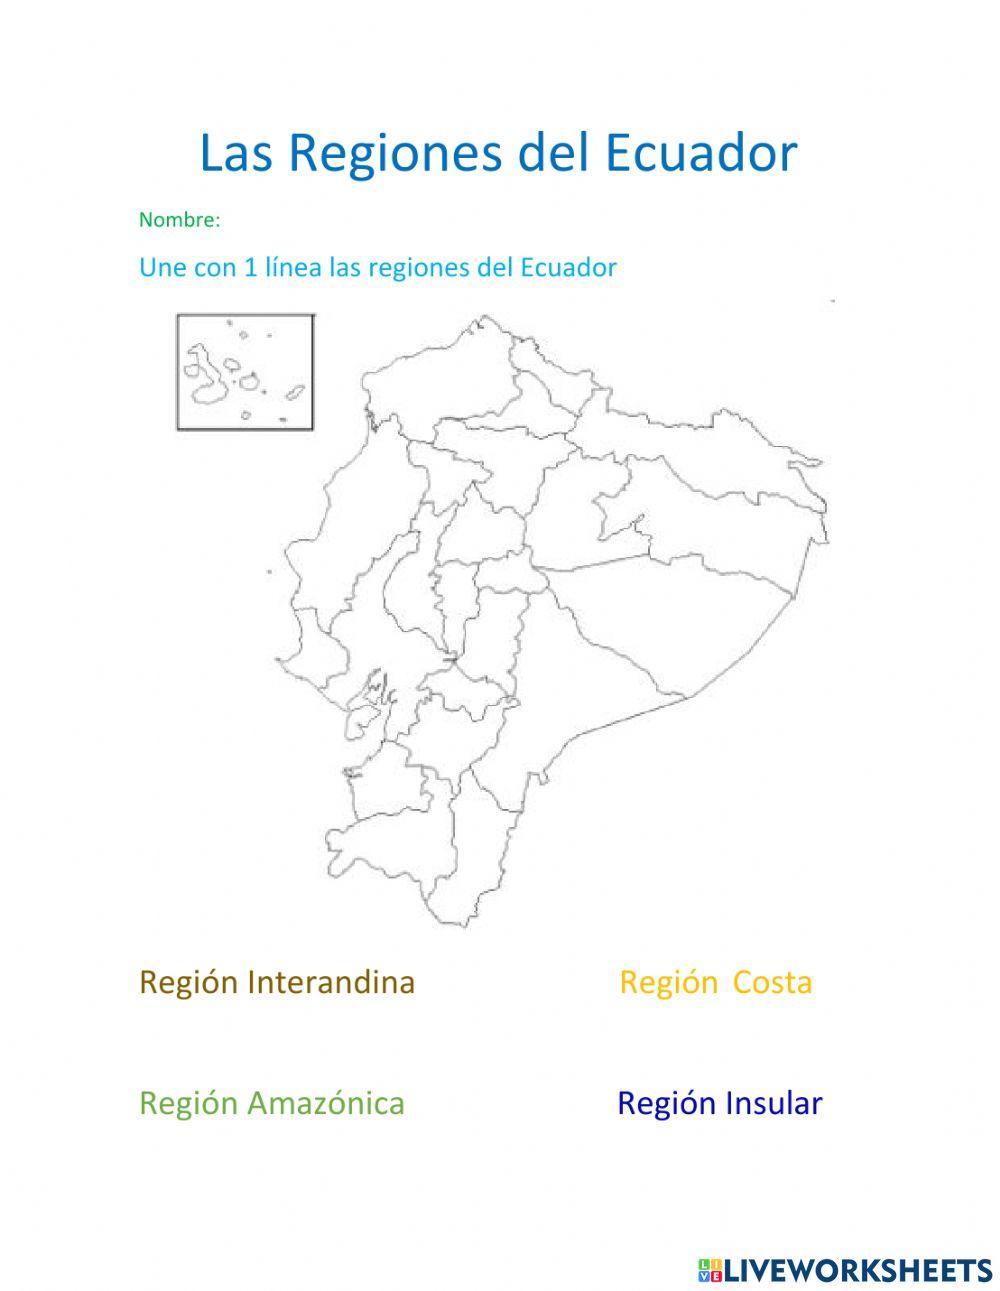 Las regiones del Ecuador